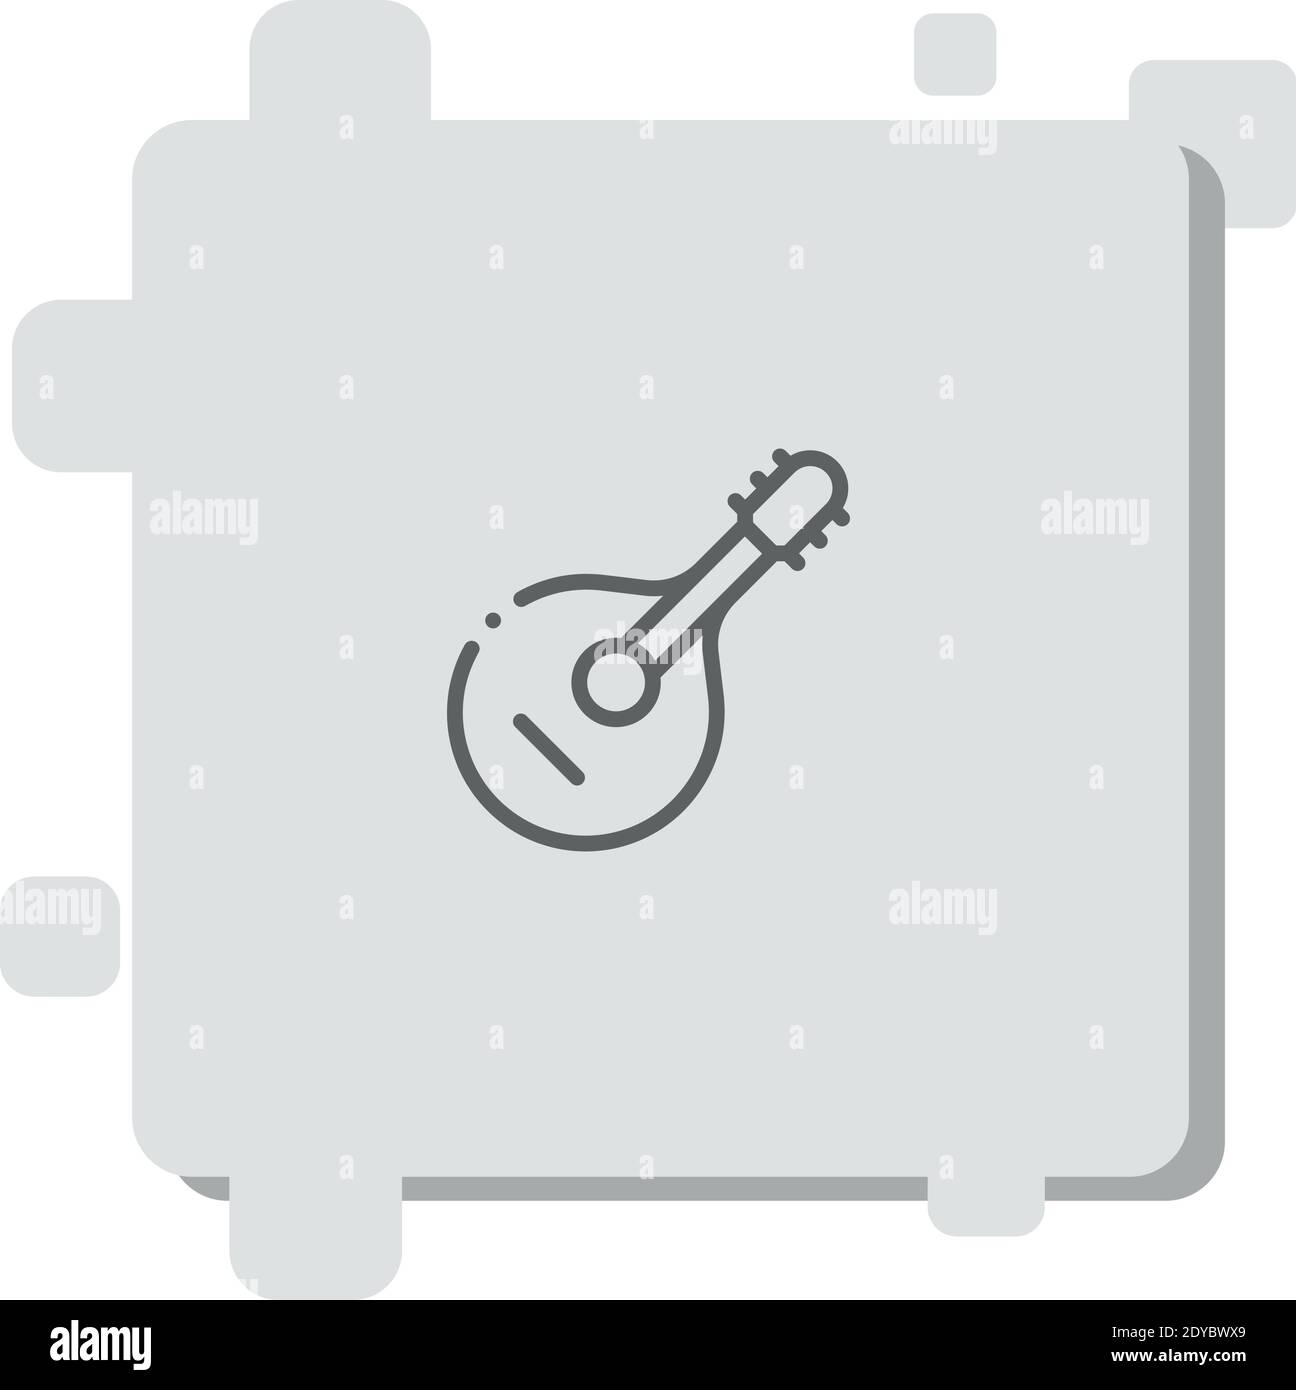 Französische Hupe. Silhouette von Musikinstrumenten. Vektorillustration  Stock-Vektorgrafik - Alamy